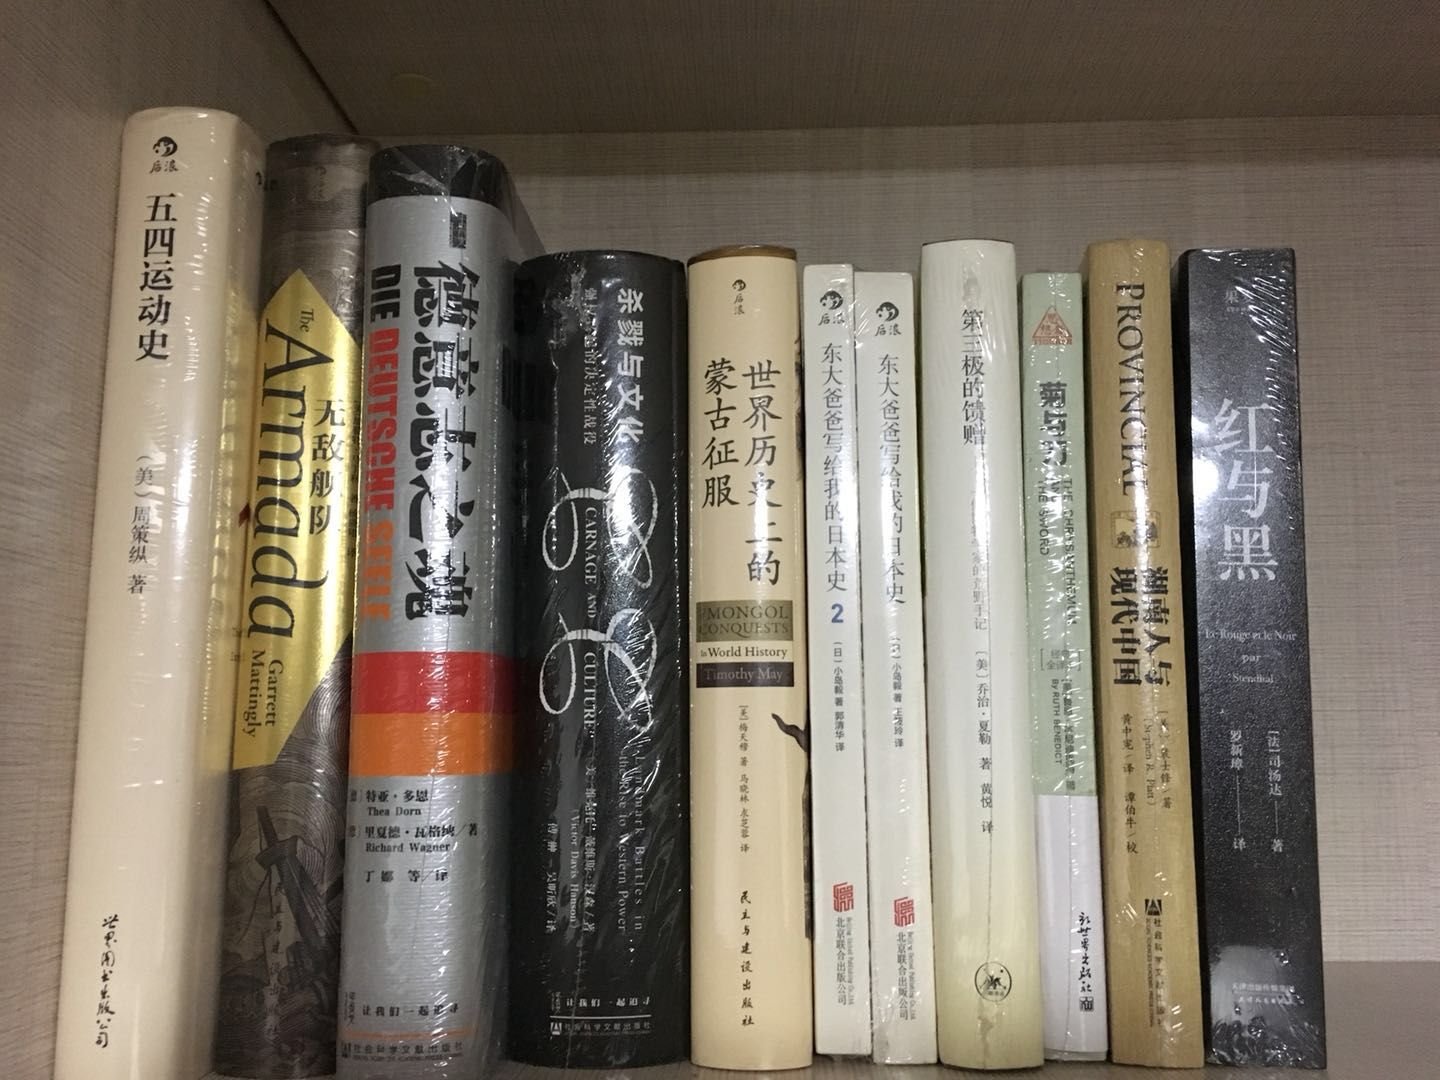 618来了，屯点书，慢慢看，传统文化的书中华书局还是很好的，弄几本看看